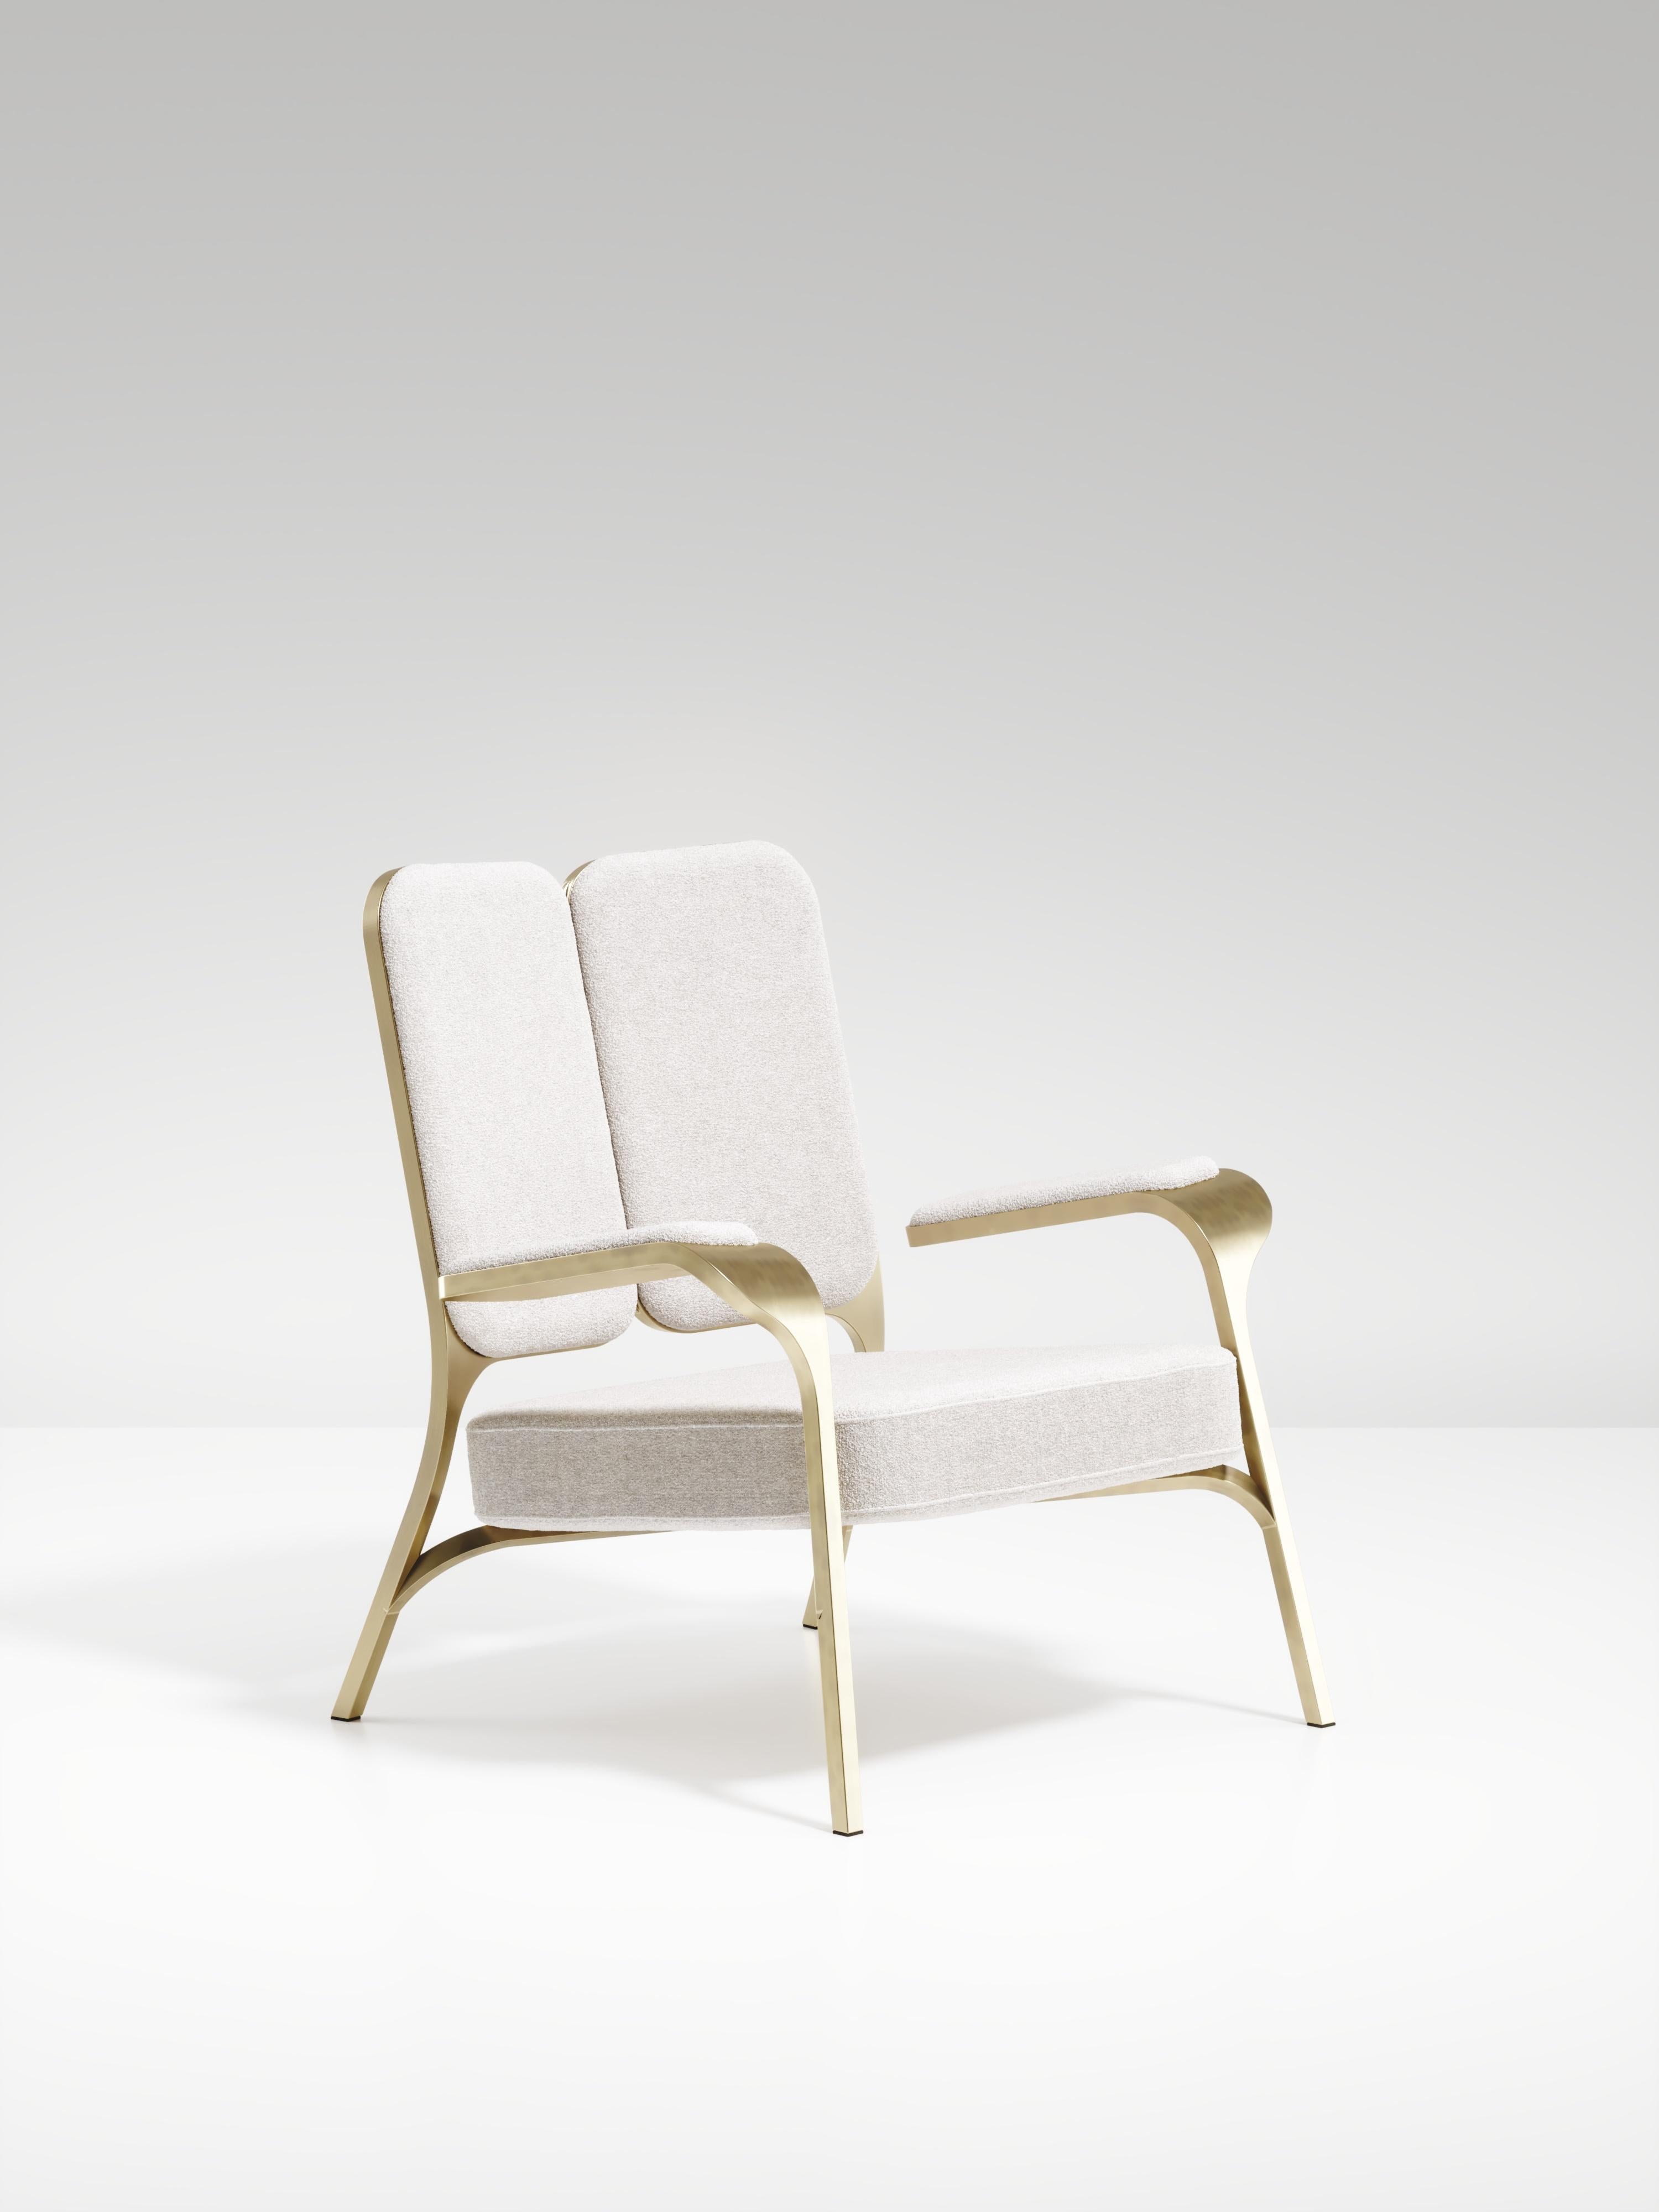 L'ensemble de 2 fauteuils Gingko de R&Y Augousti sont des pièces élégantes et fantaisistes. Les pièces rembourrées en lin crème offrent un confort tout en dégageant une esthétique ludique dans son clin d'œil abstrait à un papillon avec la forme de